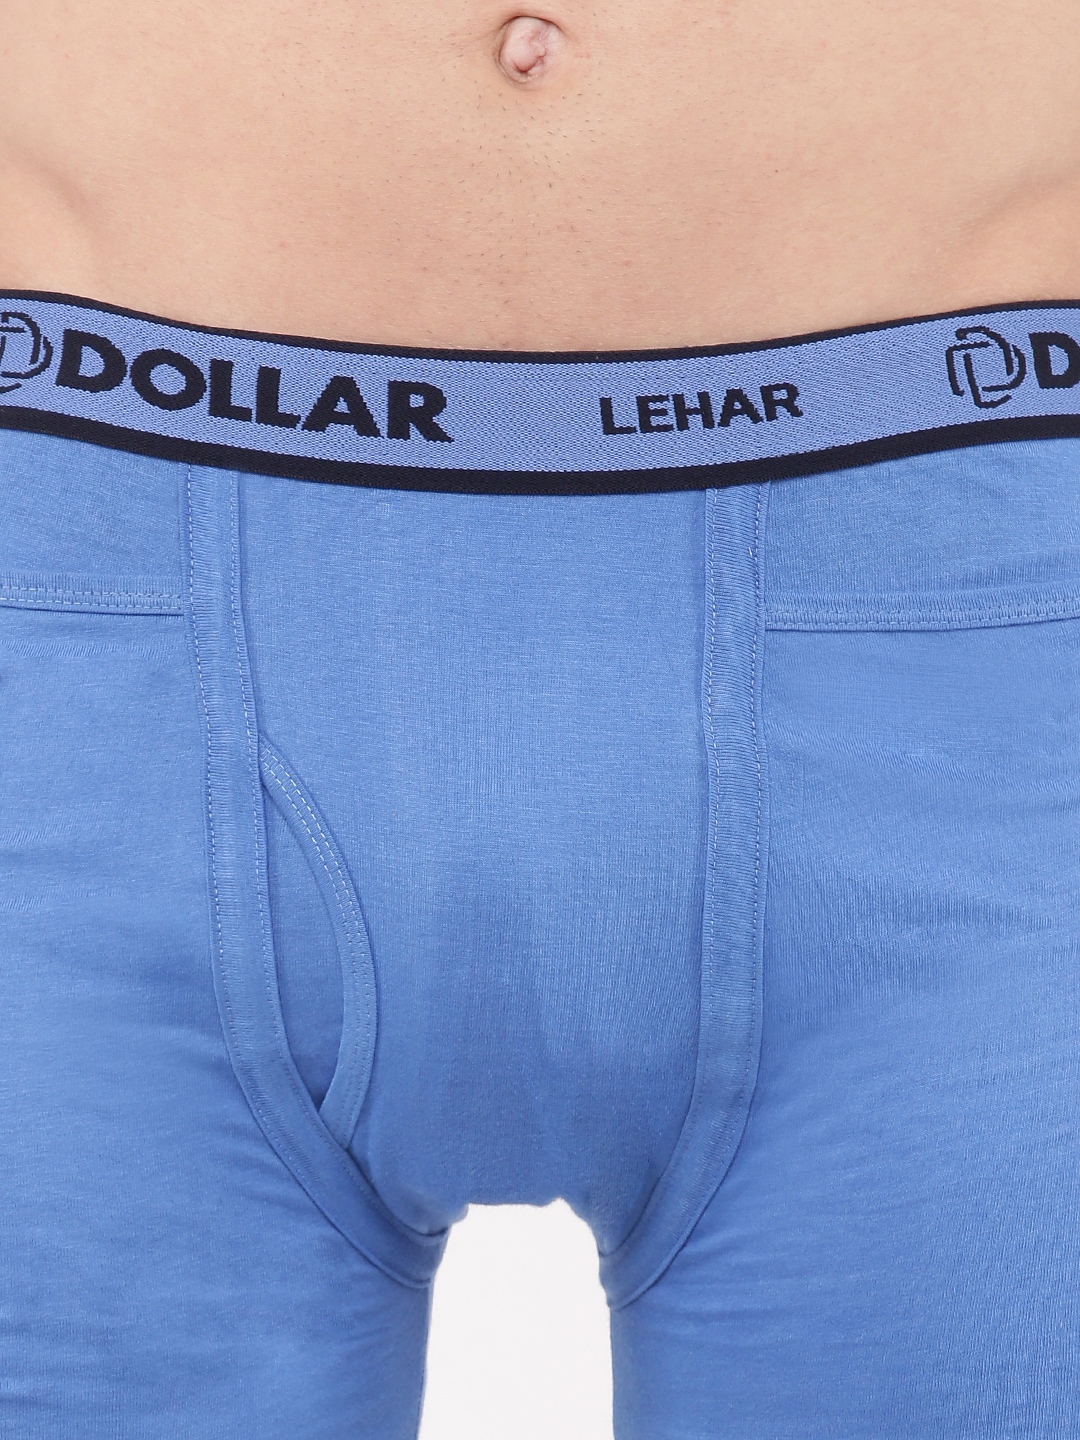 Dollar Lehar Mens Pack of 3 Fine Pocket Trunk – Dollarshoppe